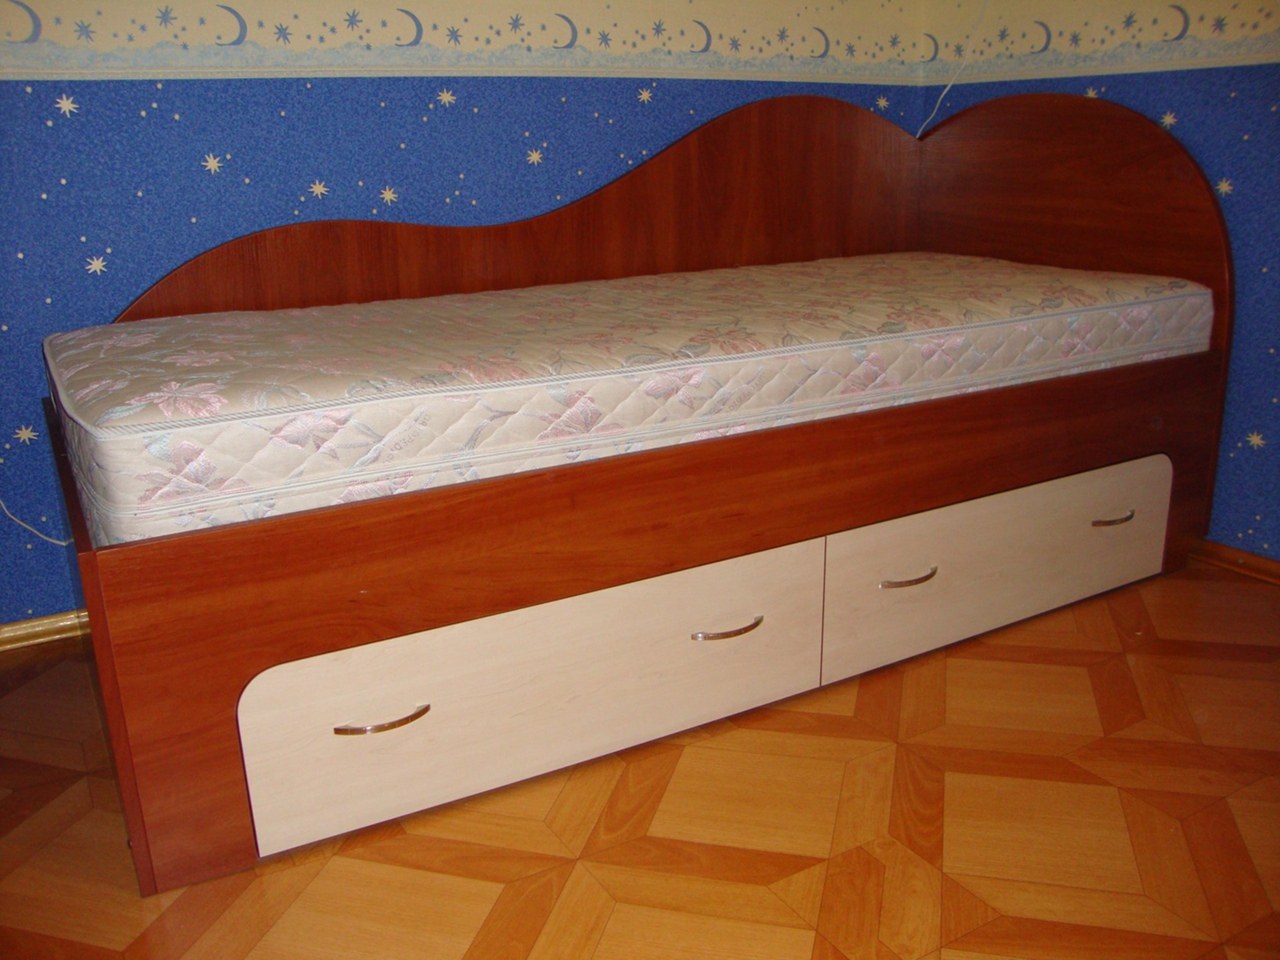 Авито кровать односпальная б у. Кровати детские 1.5 спальные детские кроватки. Детский койка. Подростковая кровать 1.20 см. Дешевая койка детская.